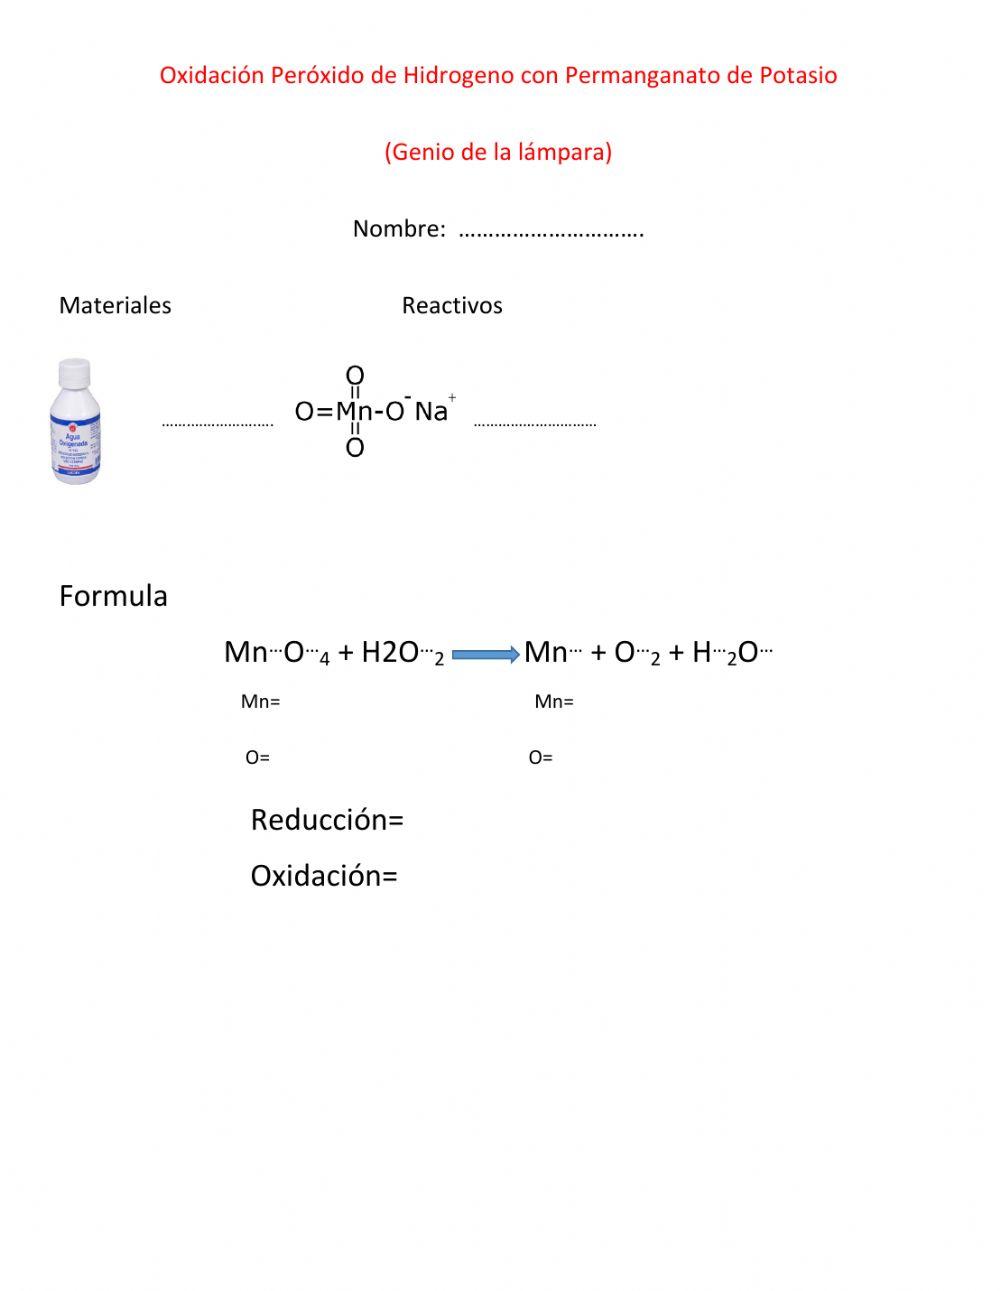 Oxidación Peróxido de Hidrógeno con Permanganato de Potasio (Genio de la lámpara)